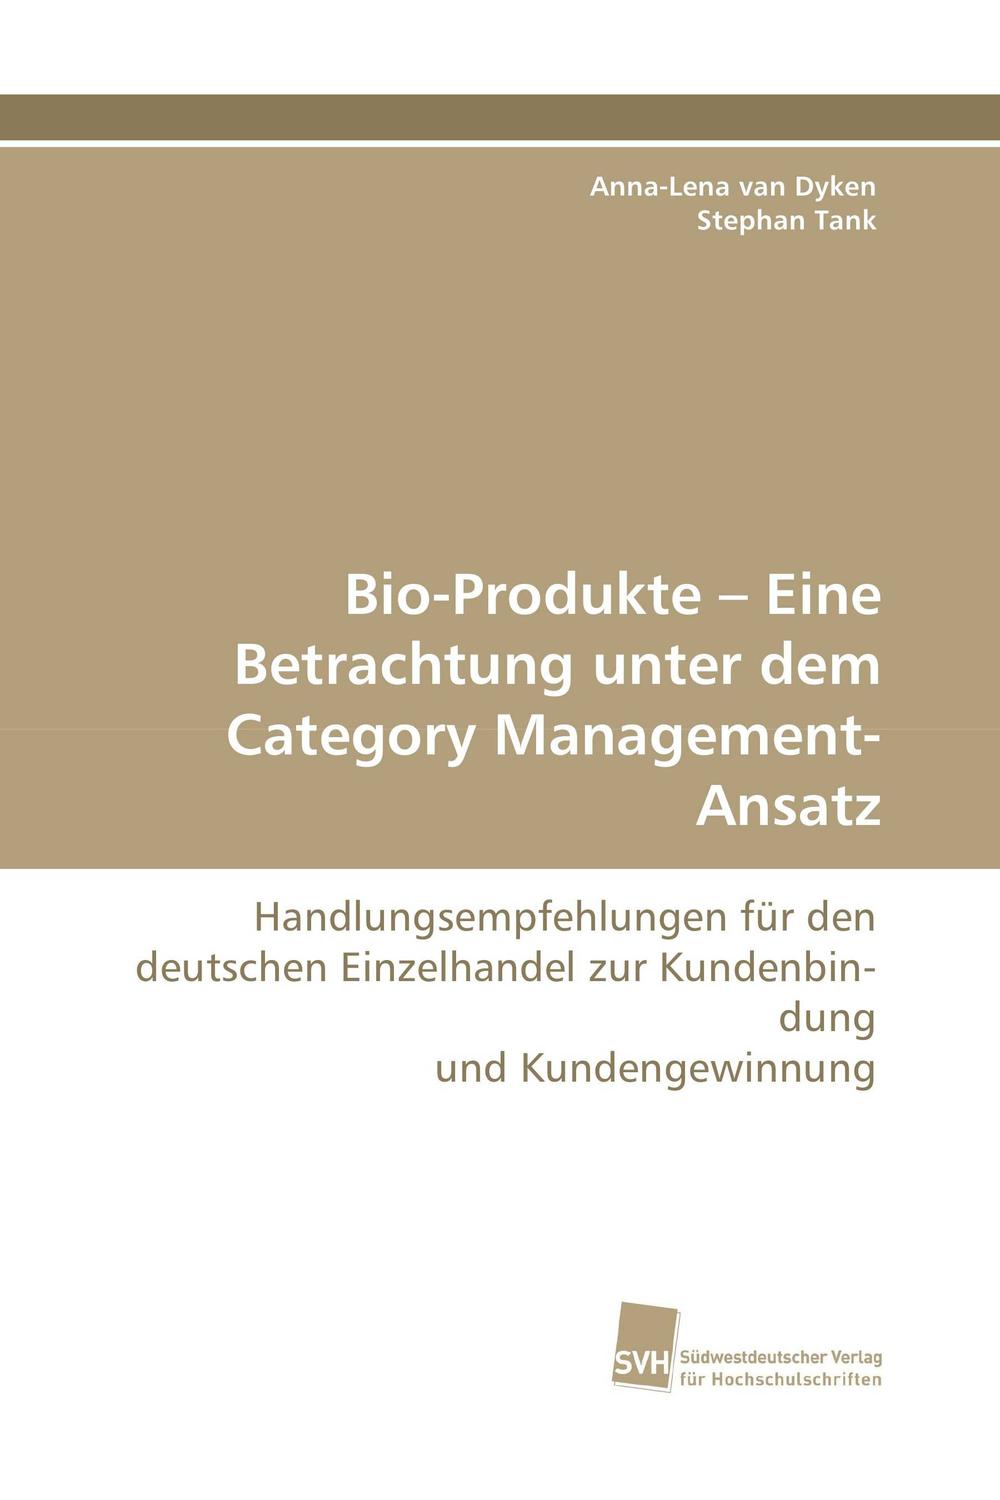 Bio-Produkte – Eine Betrachtung unter dem Category Management-Ansatz - Anna-Lena van Dyken, Stephan Tank